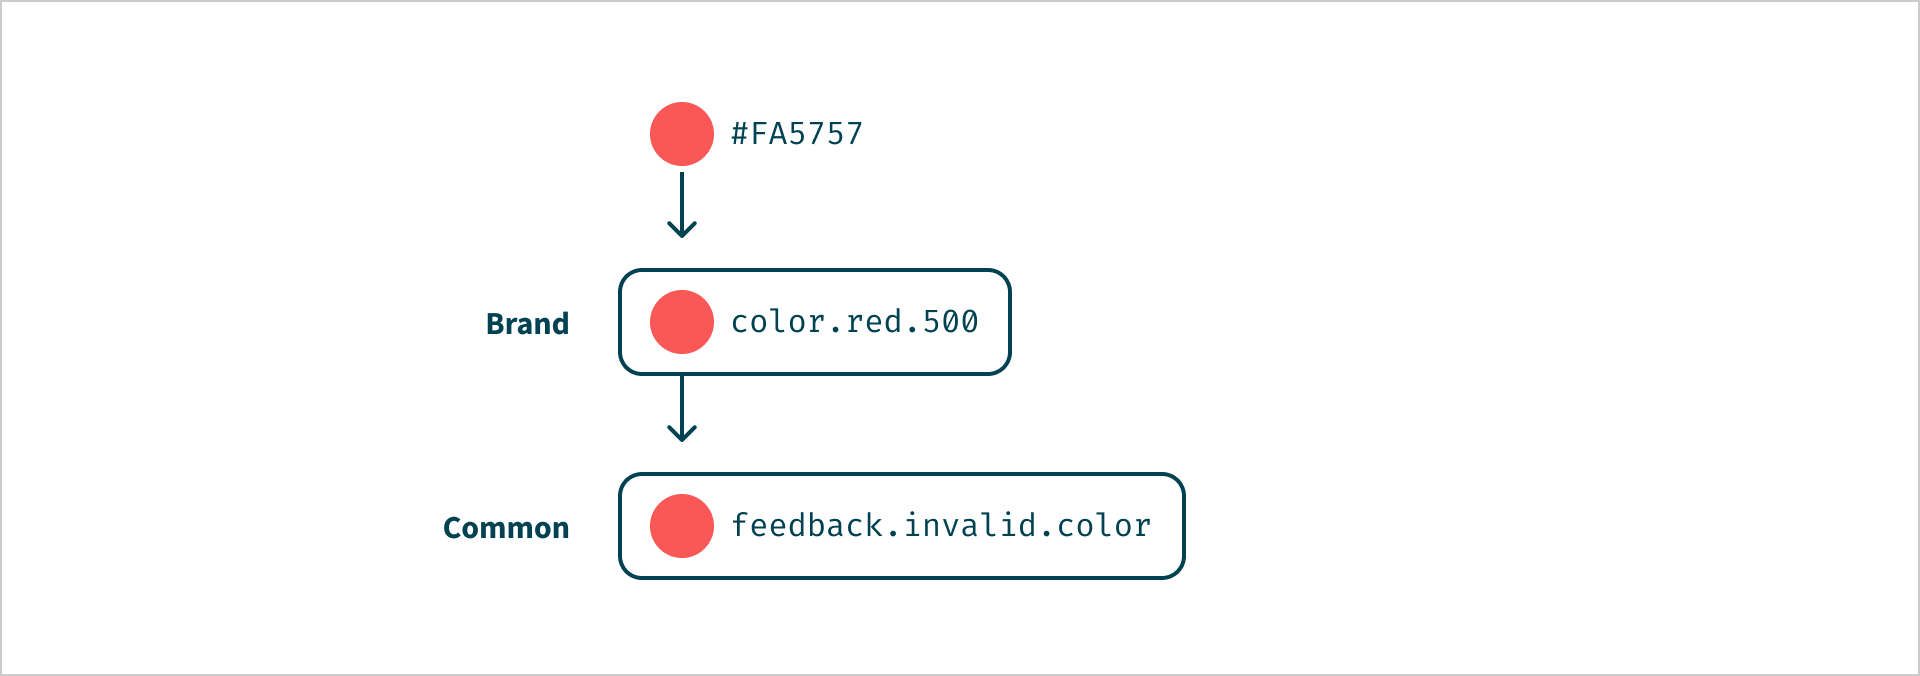 De kleur #FA5757 verwijst naar 'color.red.500' met het label 'Brand'. 'color.red.500' verwijst naar 'feedback.invalid.color' met het label 'Common'.